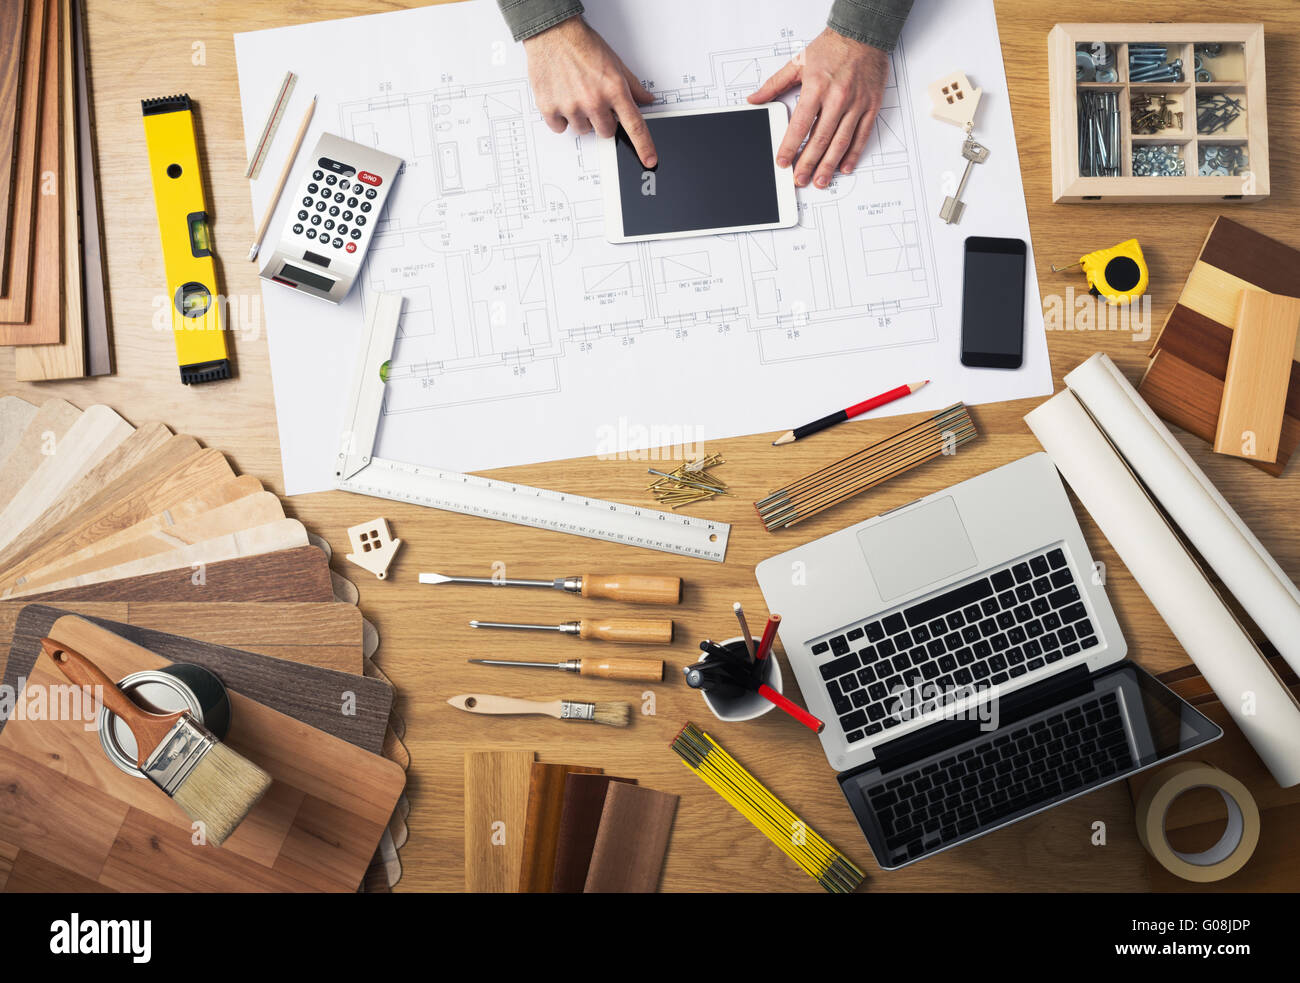 Bauingenieur und Architekt der Schreibtisch mit Hausprojekte, Laptop, Werkzeuge und Holz Farbfelder Draufsicht, Hände männlich mit einem Seitenhieb Stockfoto